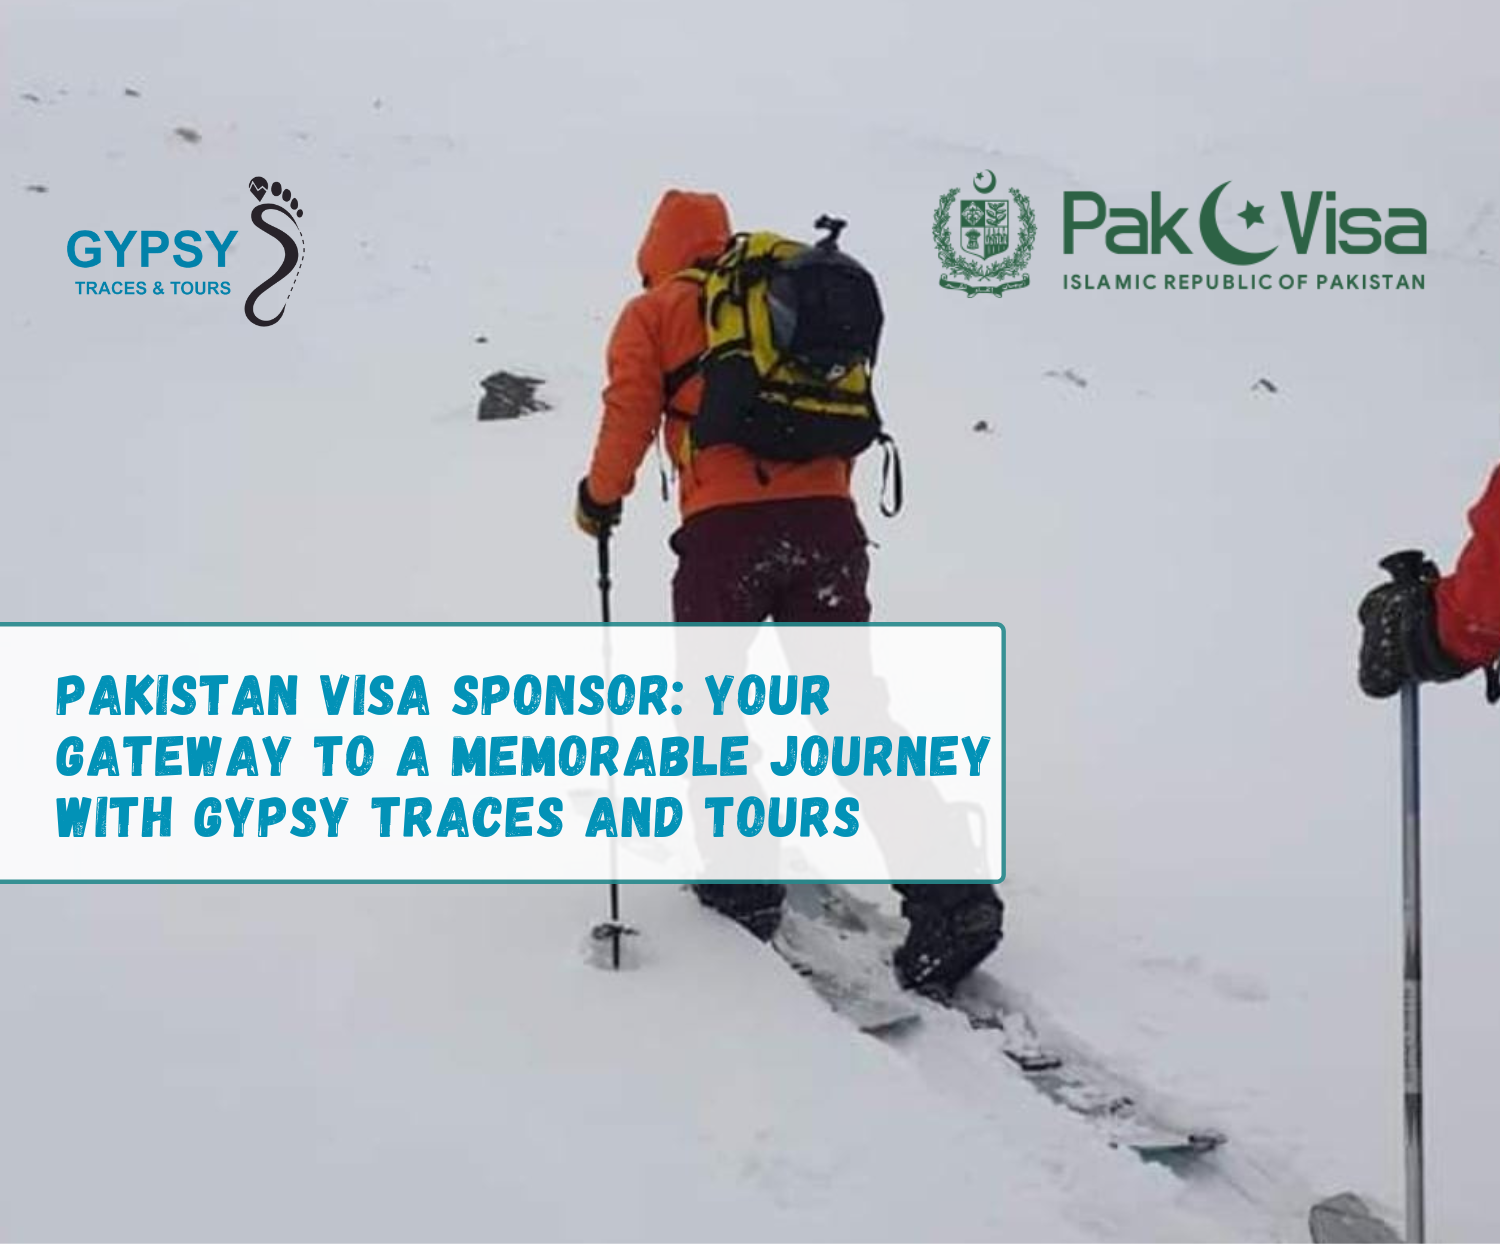 Pakistan Visa Sponsor